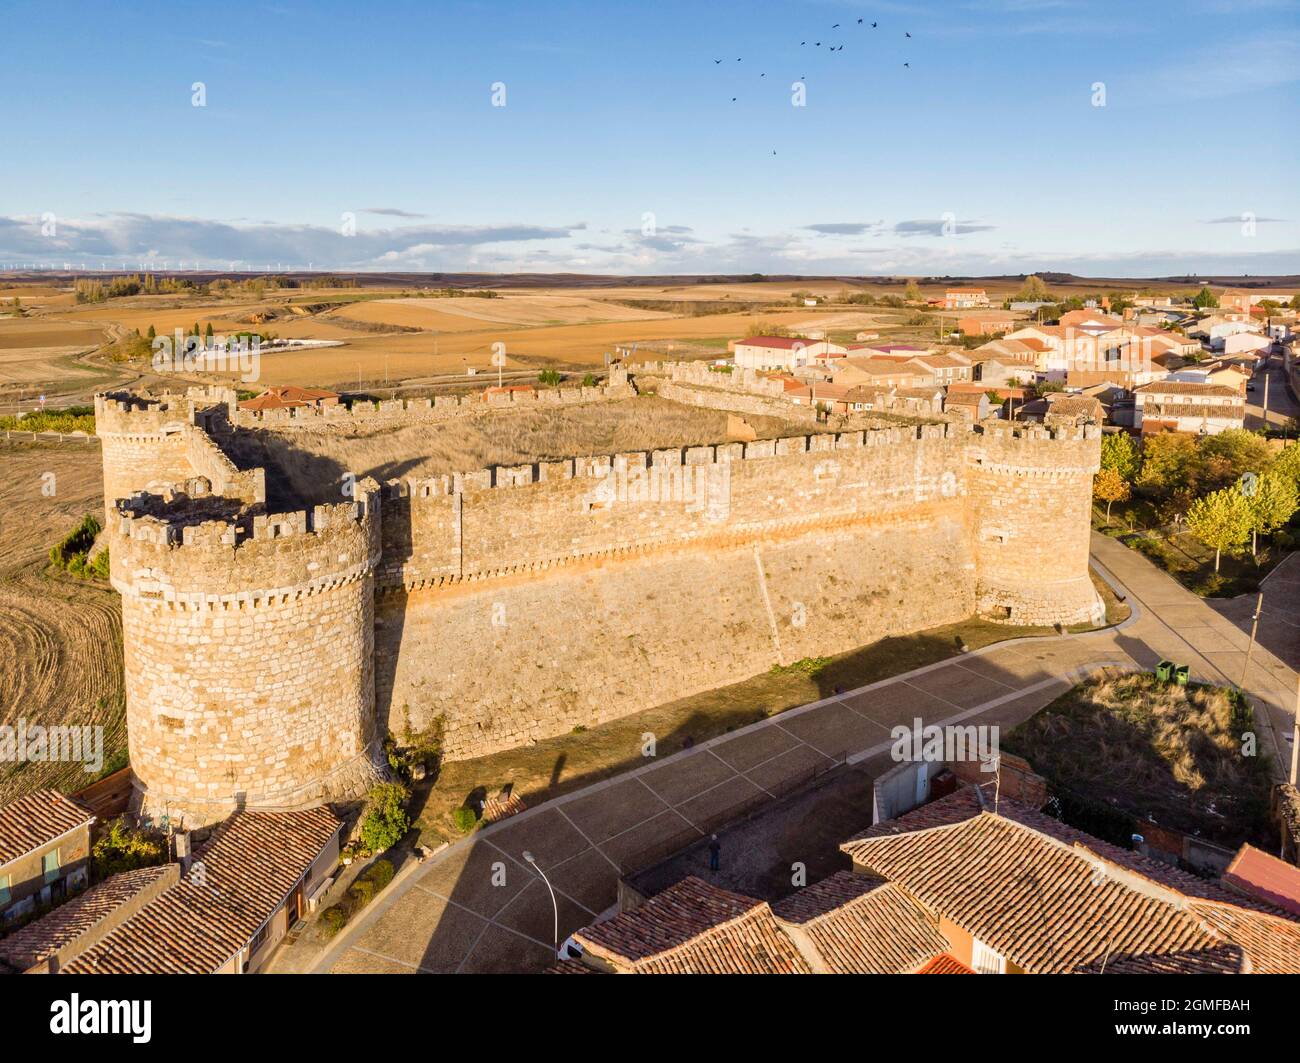 Castillo de Grajal de Campos, construcción militar del siglo 16th sobre los restos de otro castillo anterior del siglo 10th, castilla y León, España. Foto de stock